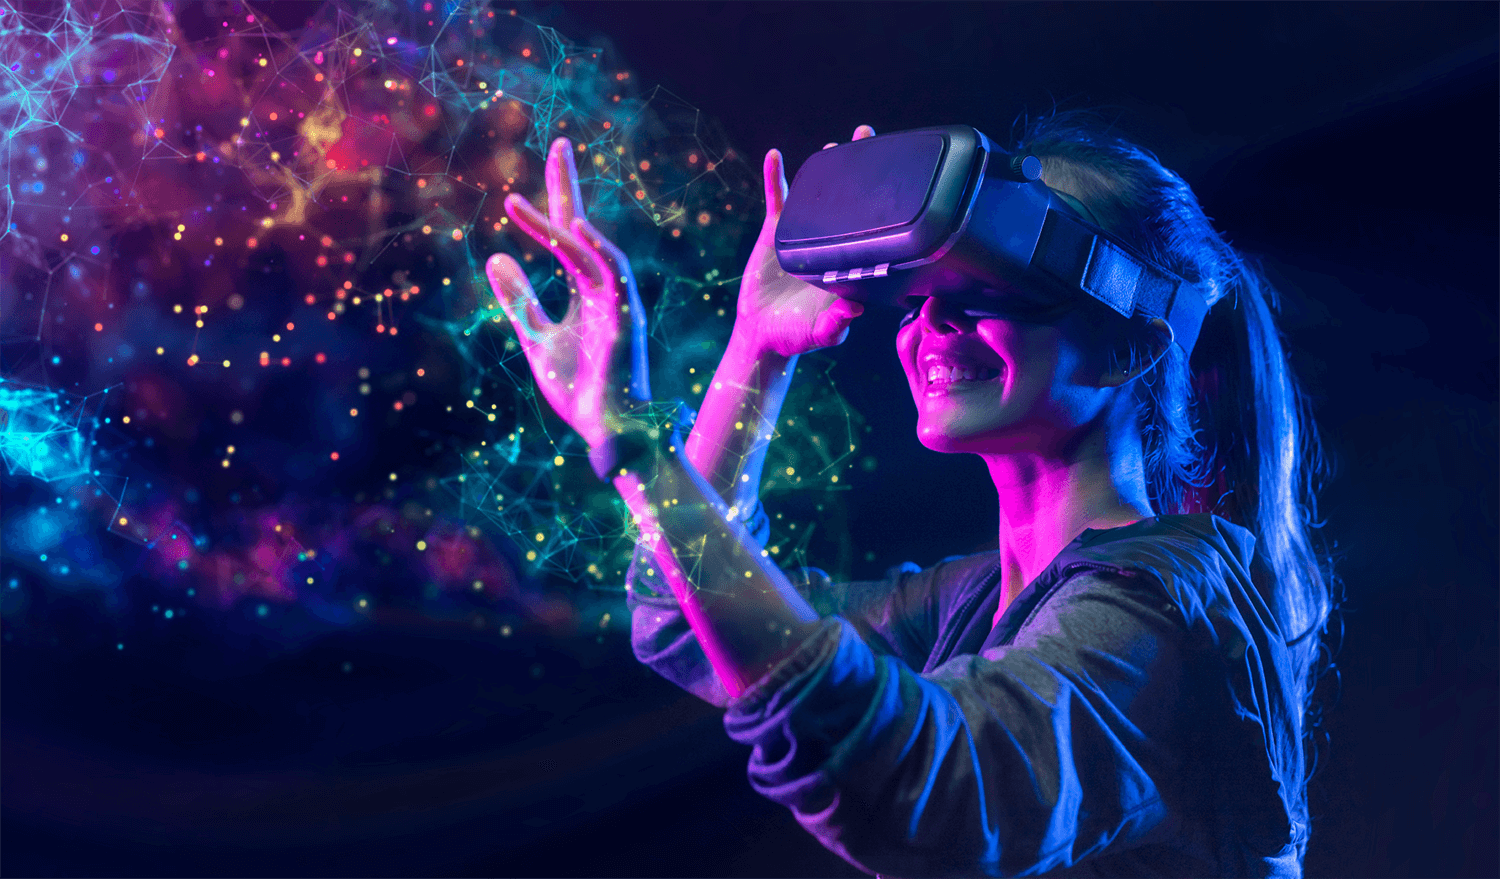 图片展示一位女性戴着虚拟现实头盔，伸手触摸光点，周围有彩色网络图形，表情专注，身处虚拟世界体验中。